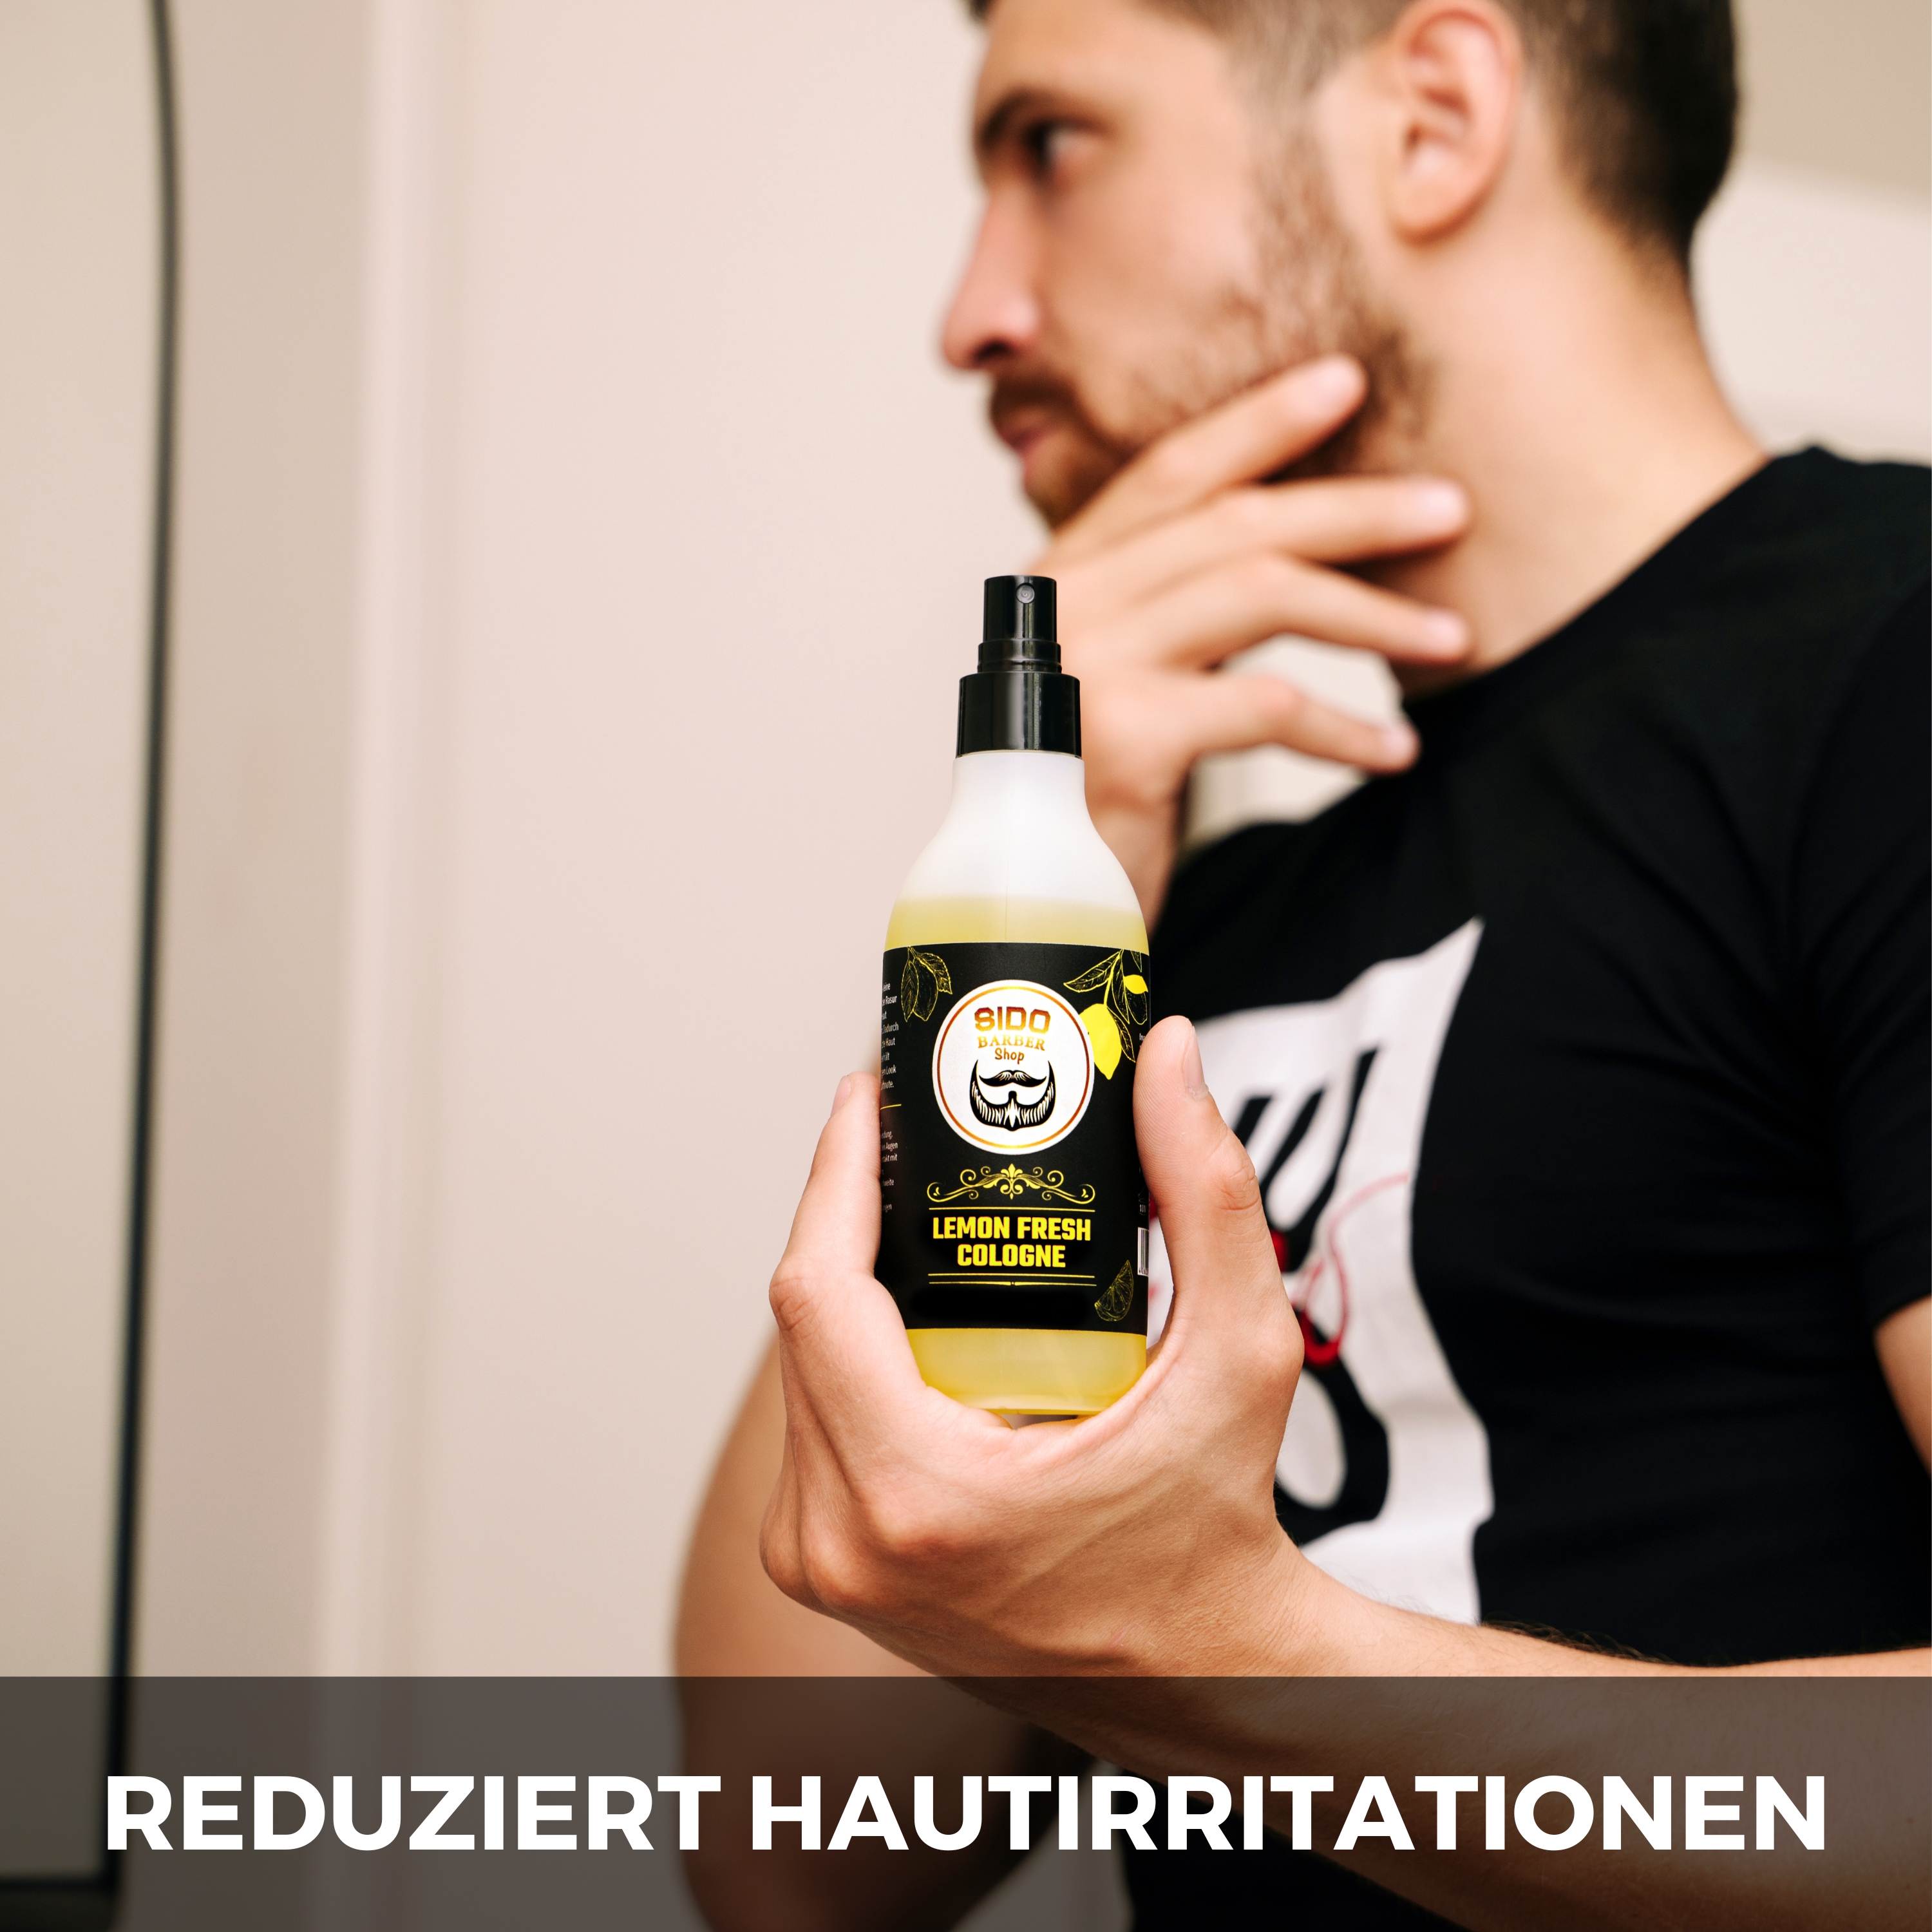 SIDO BARBER Cologne Spray After Shave Herren (250ml, Fresh Lemon) - Barber Spray for Men nach der Rasur - Rasierwasser Spray zur Pflege nach der Rasur - Beruhigt die Haut nach dem Rasieren